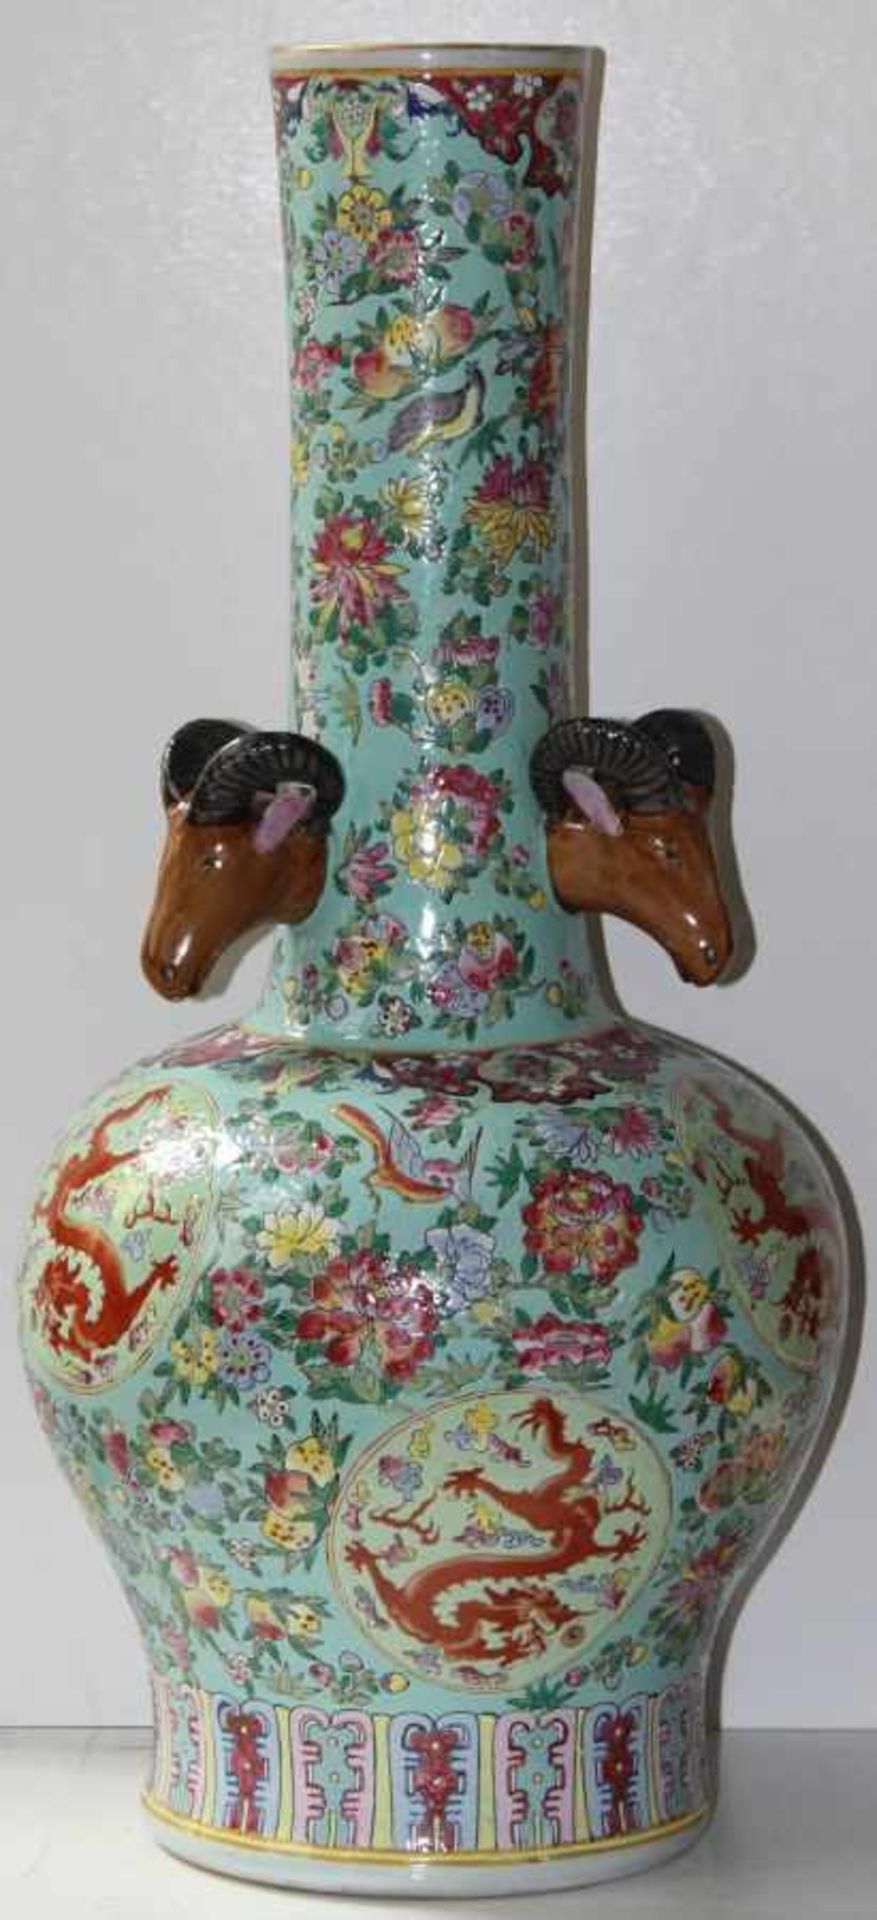 Vase China 20 Jhdt. Porzellan, bunt staffiert mit Drachen- und Floraldekor, seitlich 3 plastische